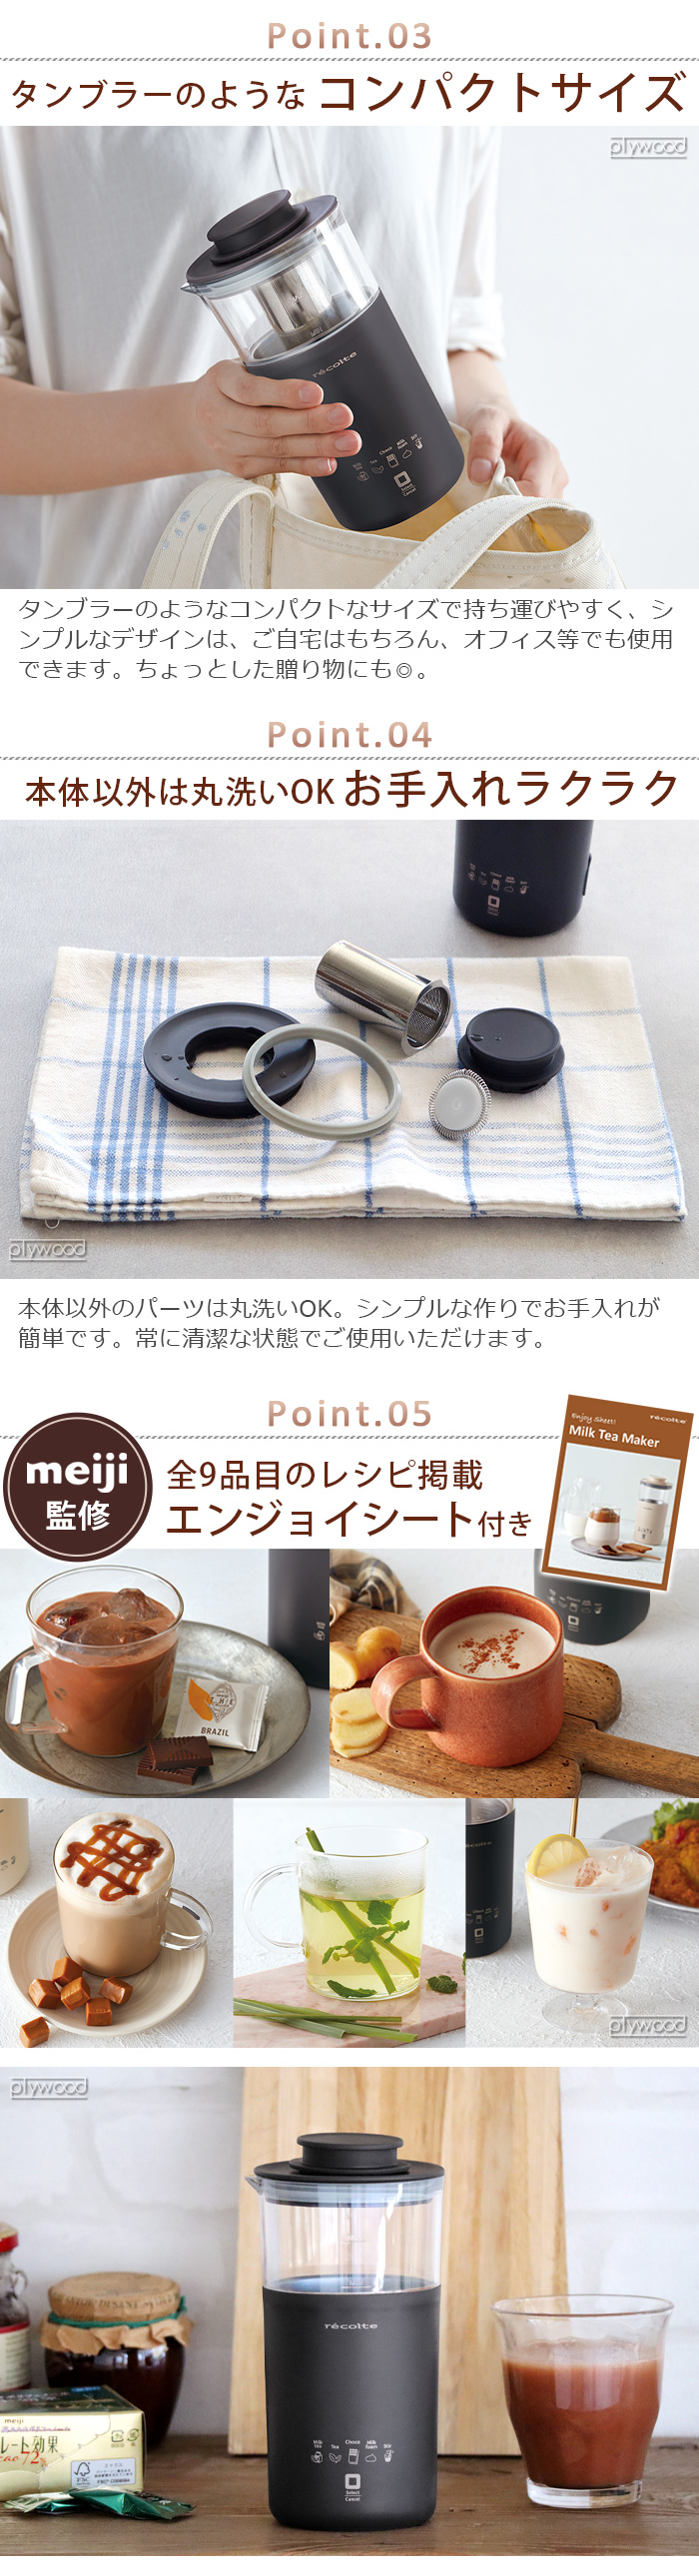 【特典付】レコルト チョコレートドリンクメーカー recolte Chocolate Drink Maker RMT-2 明治 meiji  ミルクティー 紅茶 カプチーノ 泡ミルク